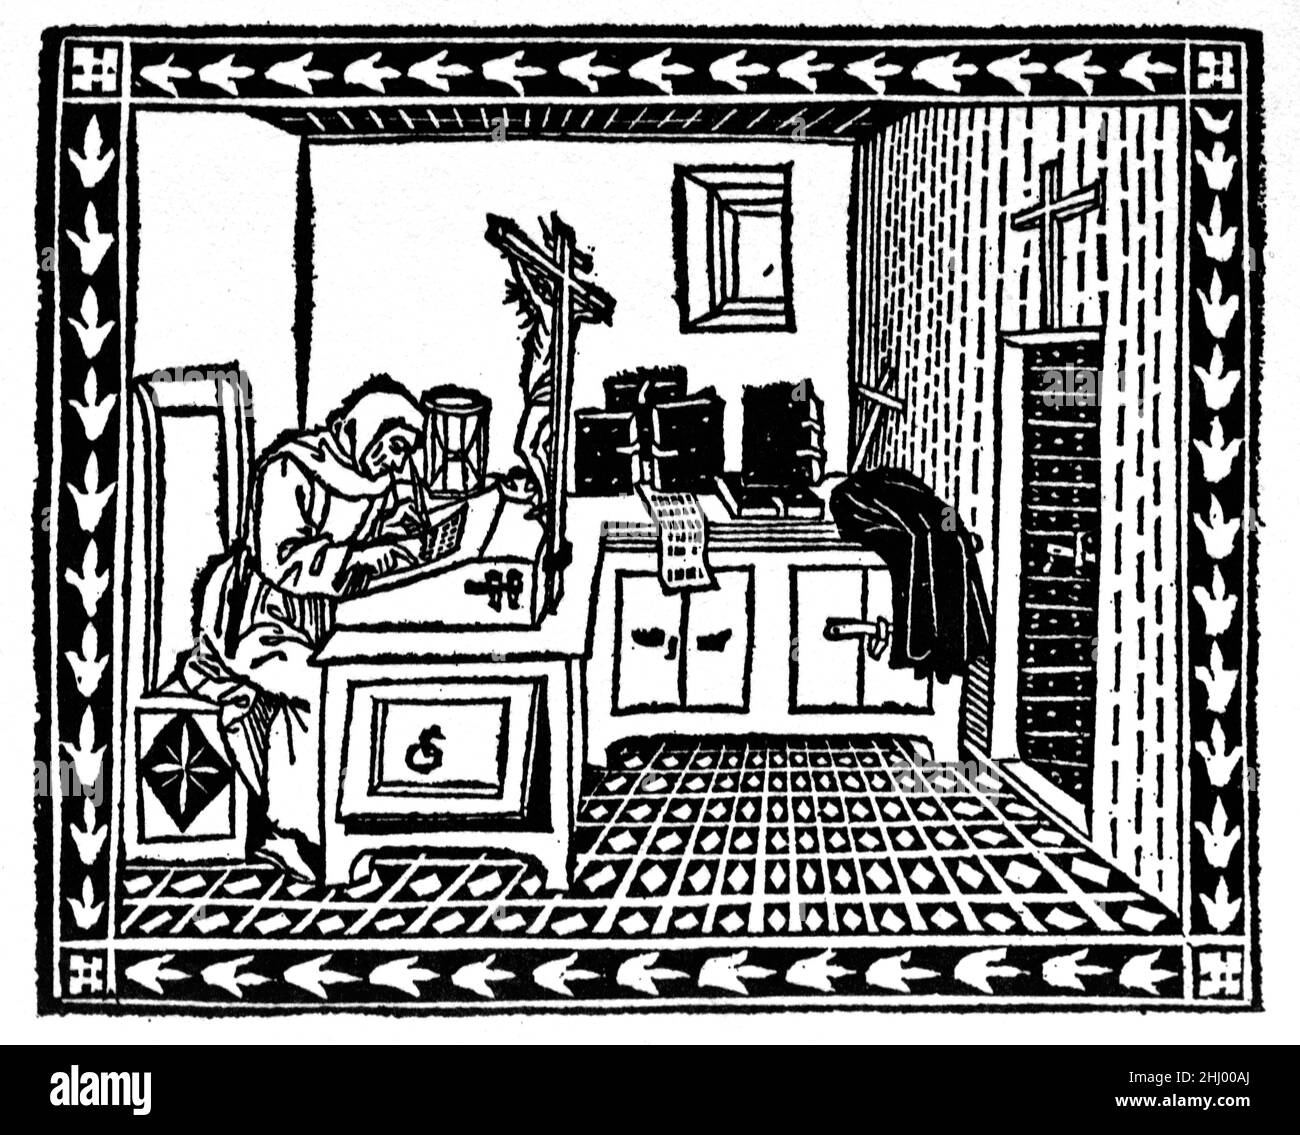 Chercheur italien Girolamo Savonarola (1452-1498) alias Jerome Savonarola, travaillant dans la cellule de Monk ou l'étude Florence Italie.Savonarola était un Friar dominicain italien de la Renaissance de Florence qui croyait dans une vie vertueuse avec vice, luxe ou ostentation. c15th Woodcut Print, Engraving ou Illustration. Banque D'Images